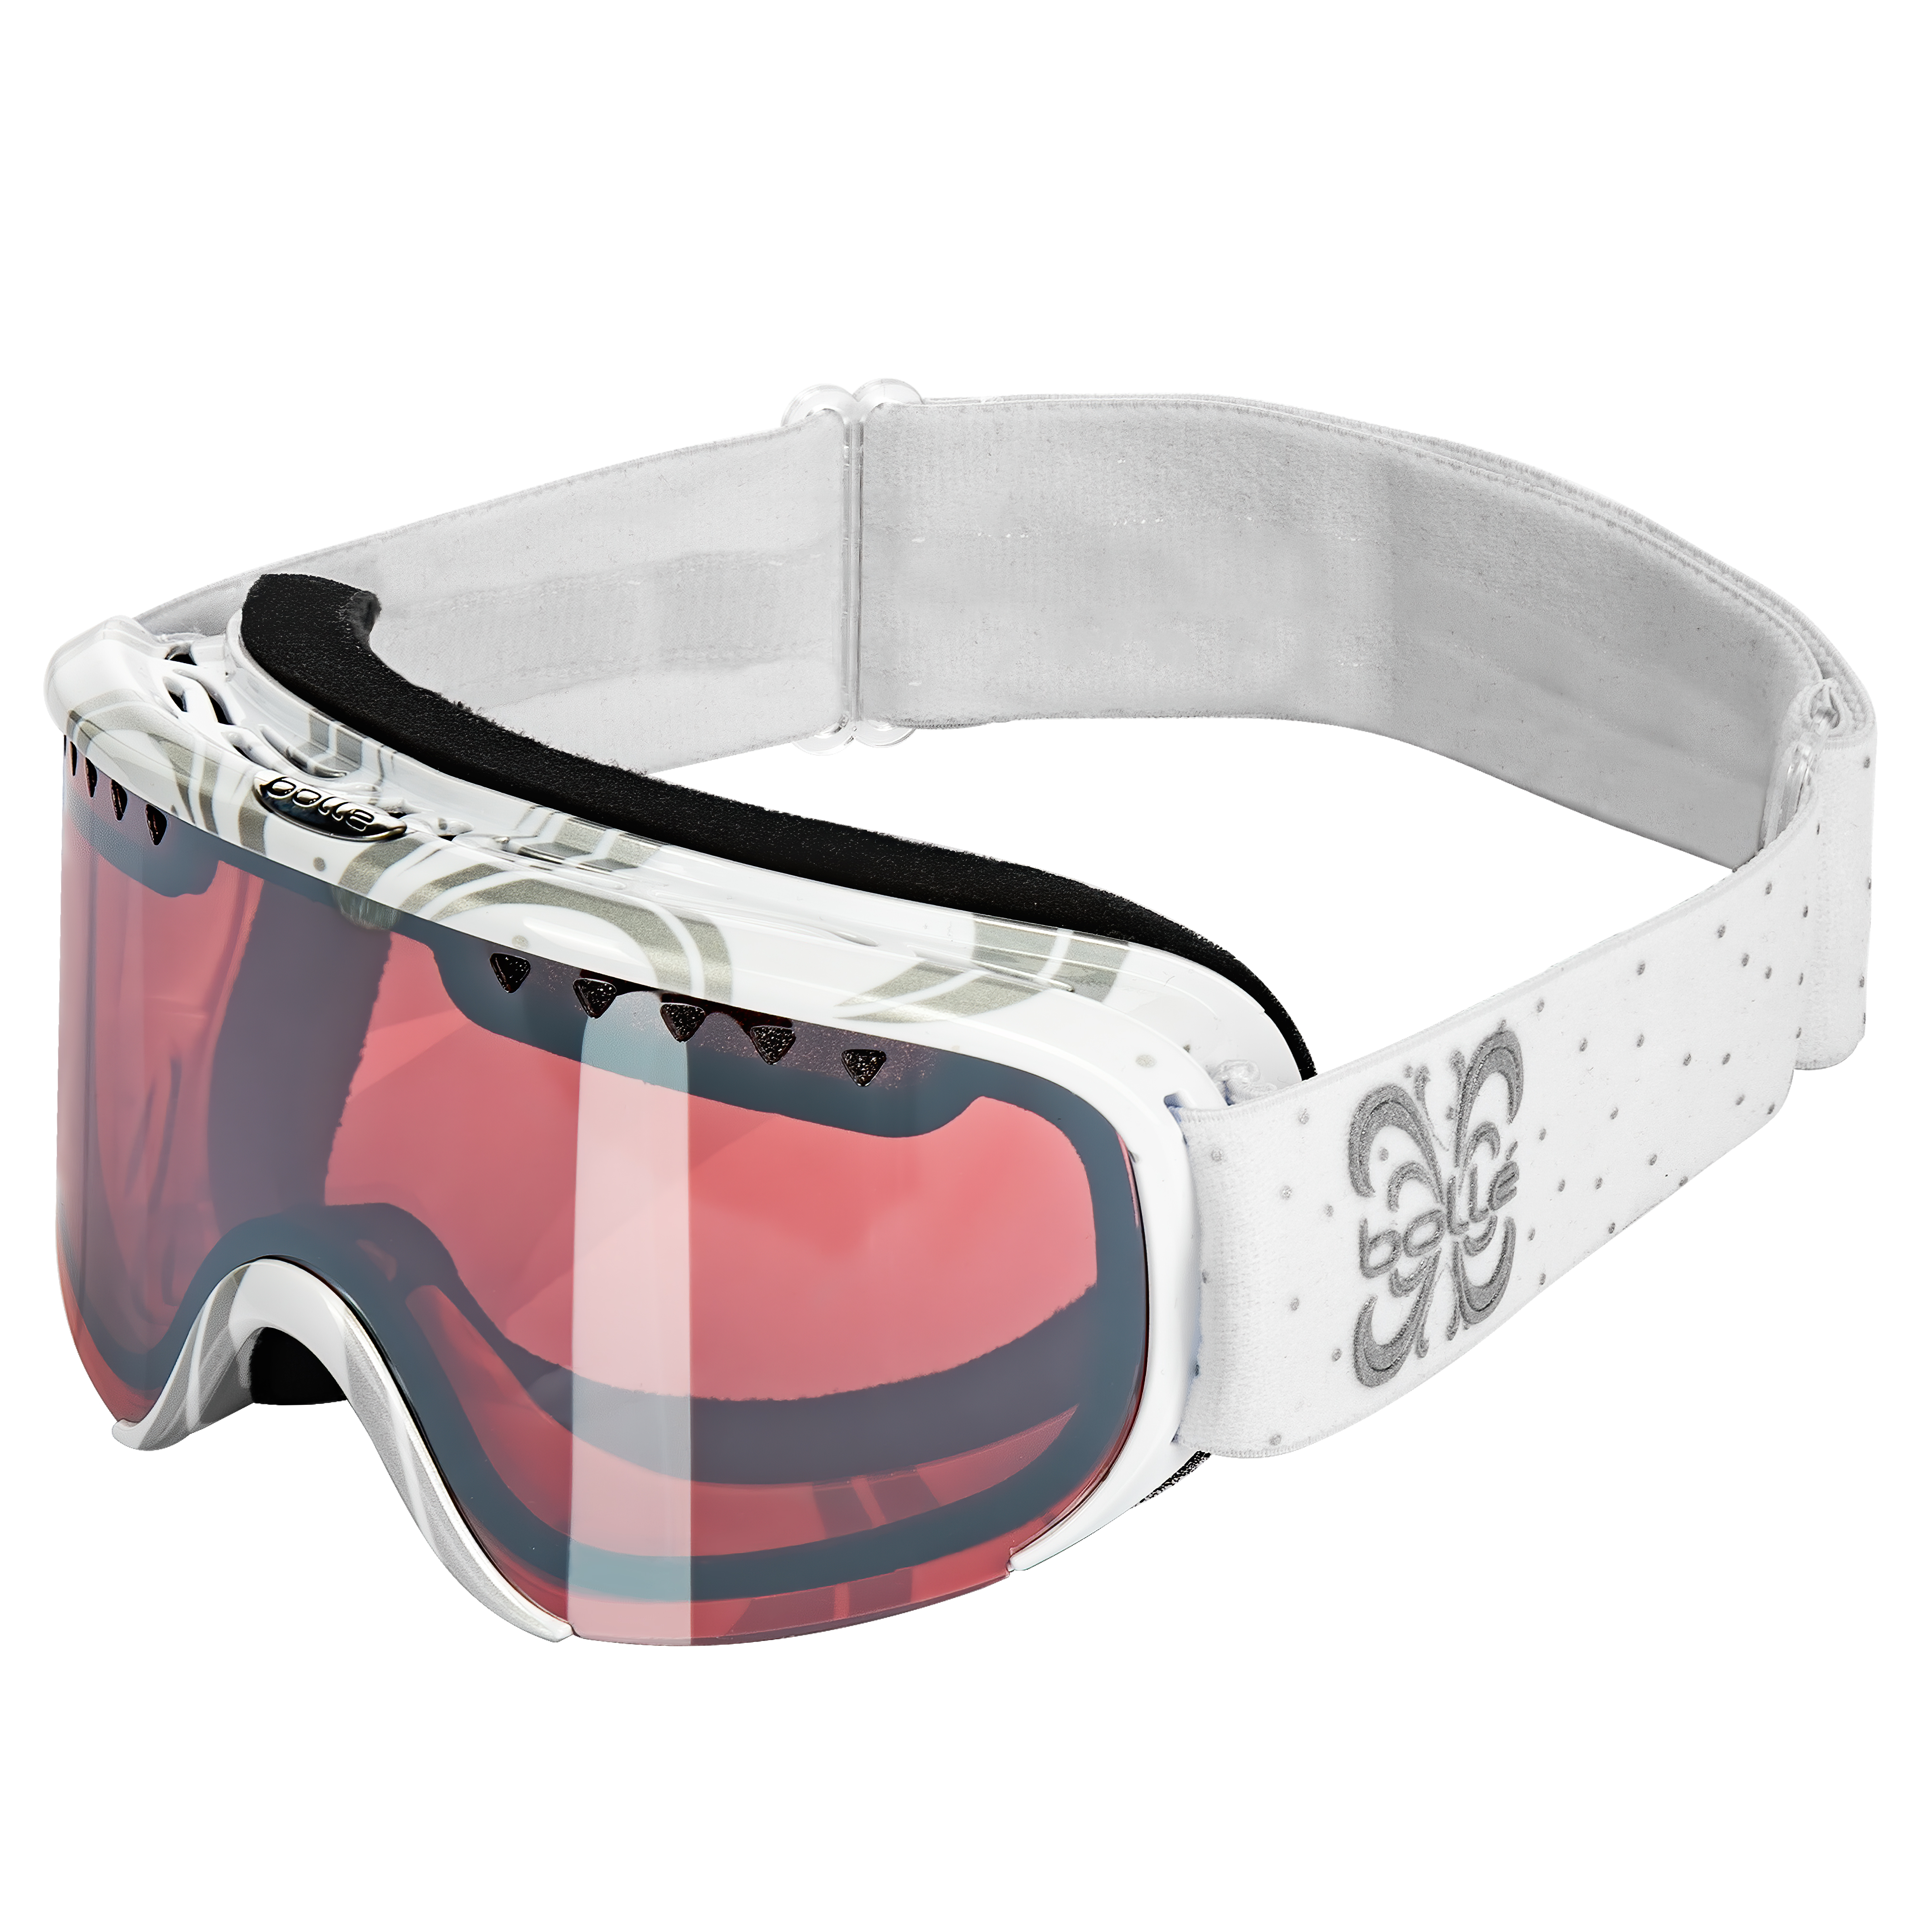 Цена лыжная маска для пасмурной погоды Bolle Scarlett Shiny White Night Vermillon Gun в Киеве